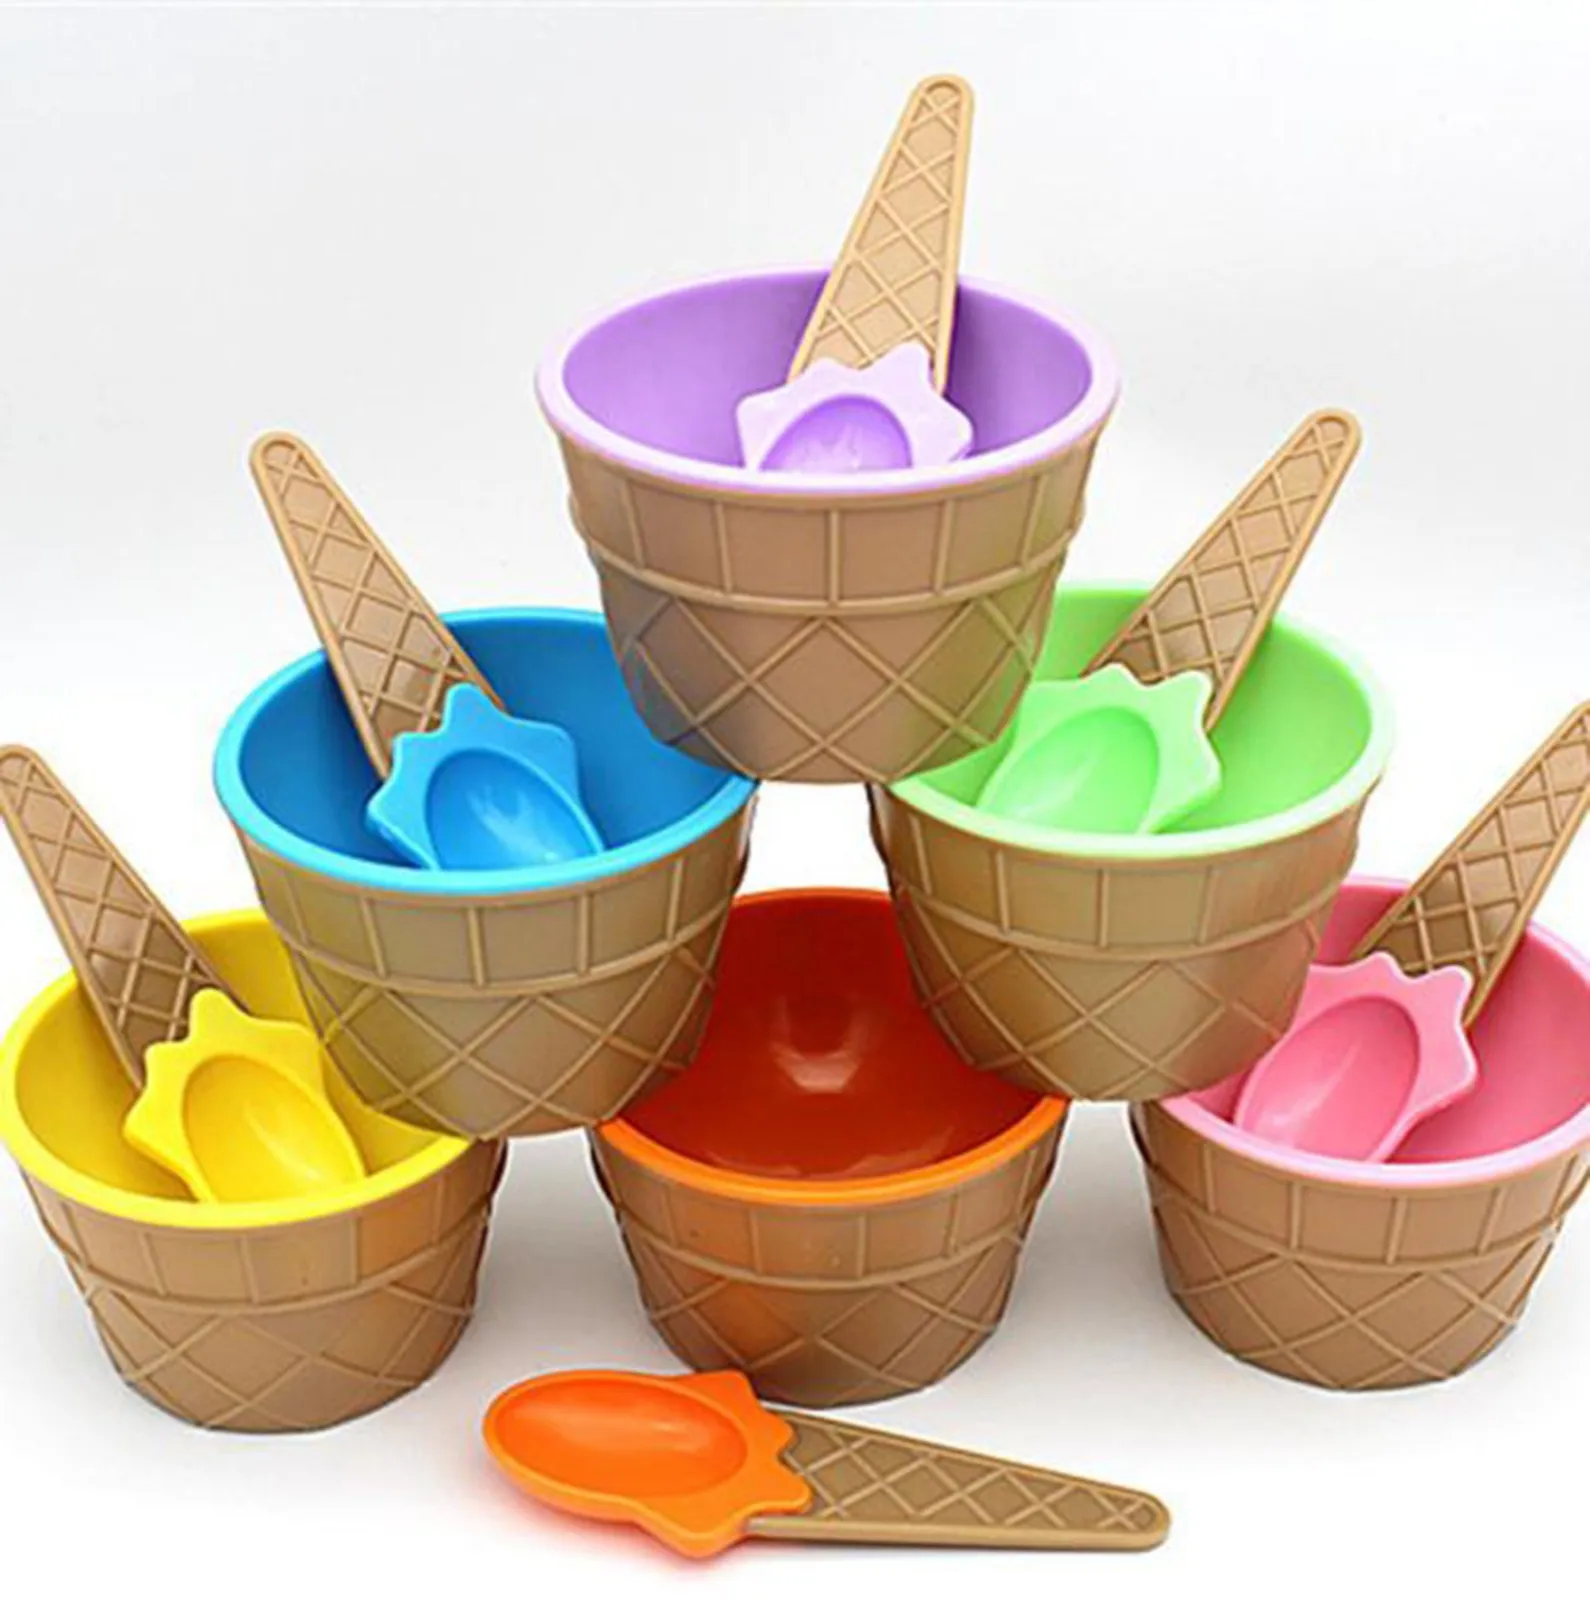 

Пластиковые цветные коробки для хранения, 1 шт., Детские чаши для мороженого, чашка для мороженого, парные чашки, подарки, контейнер для десер...